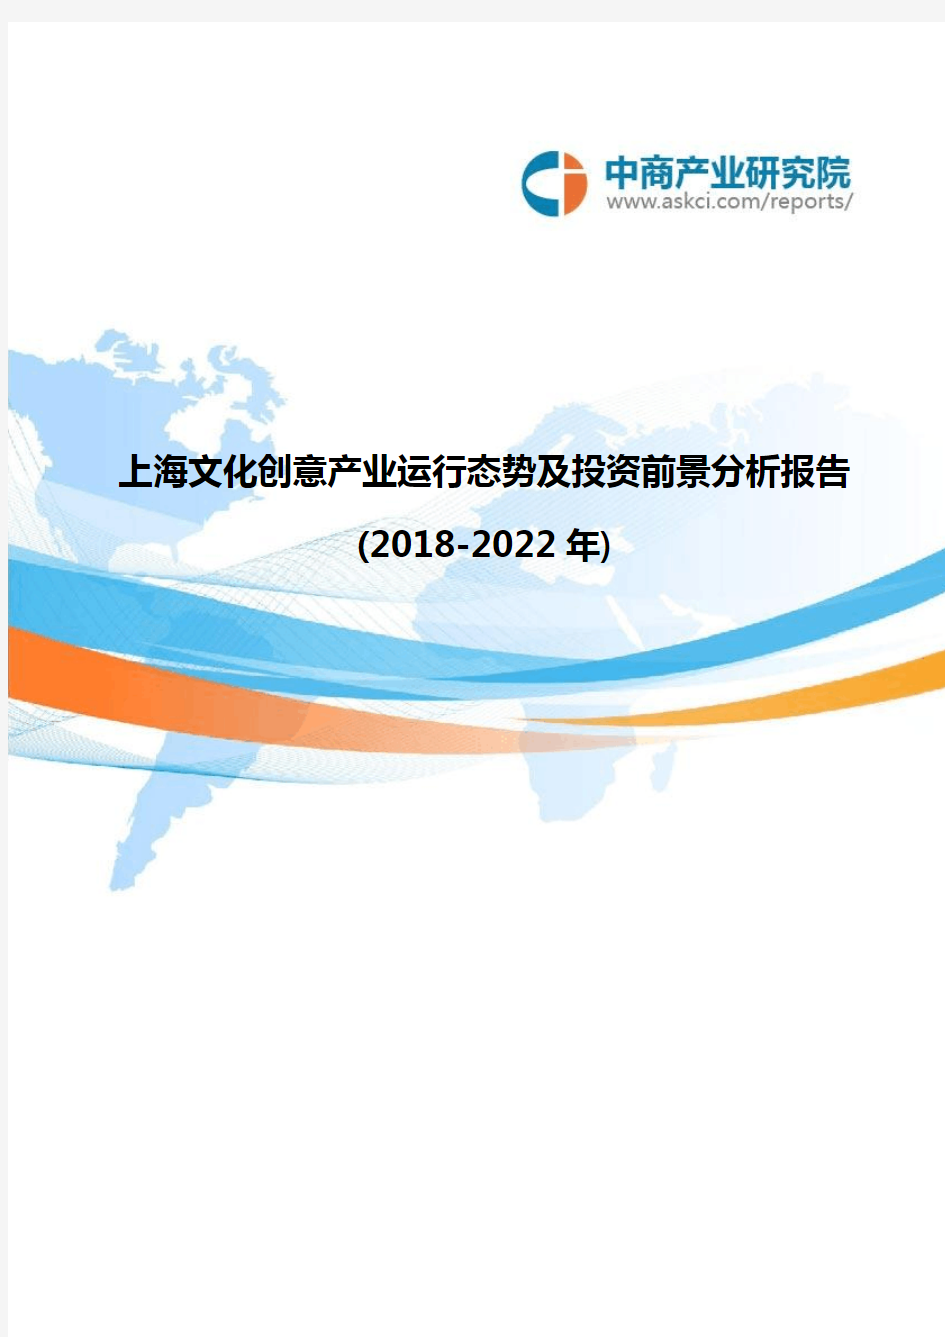 上海文化创意产业运行态势及投资前景分析报告(2018-2022年)